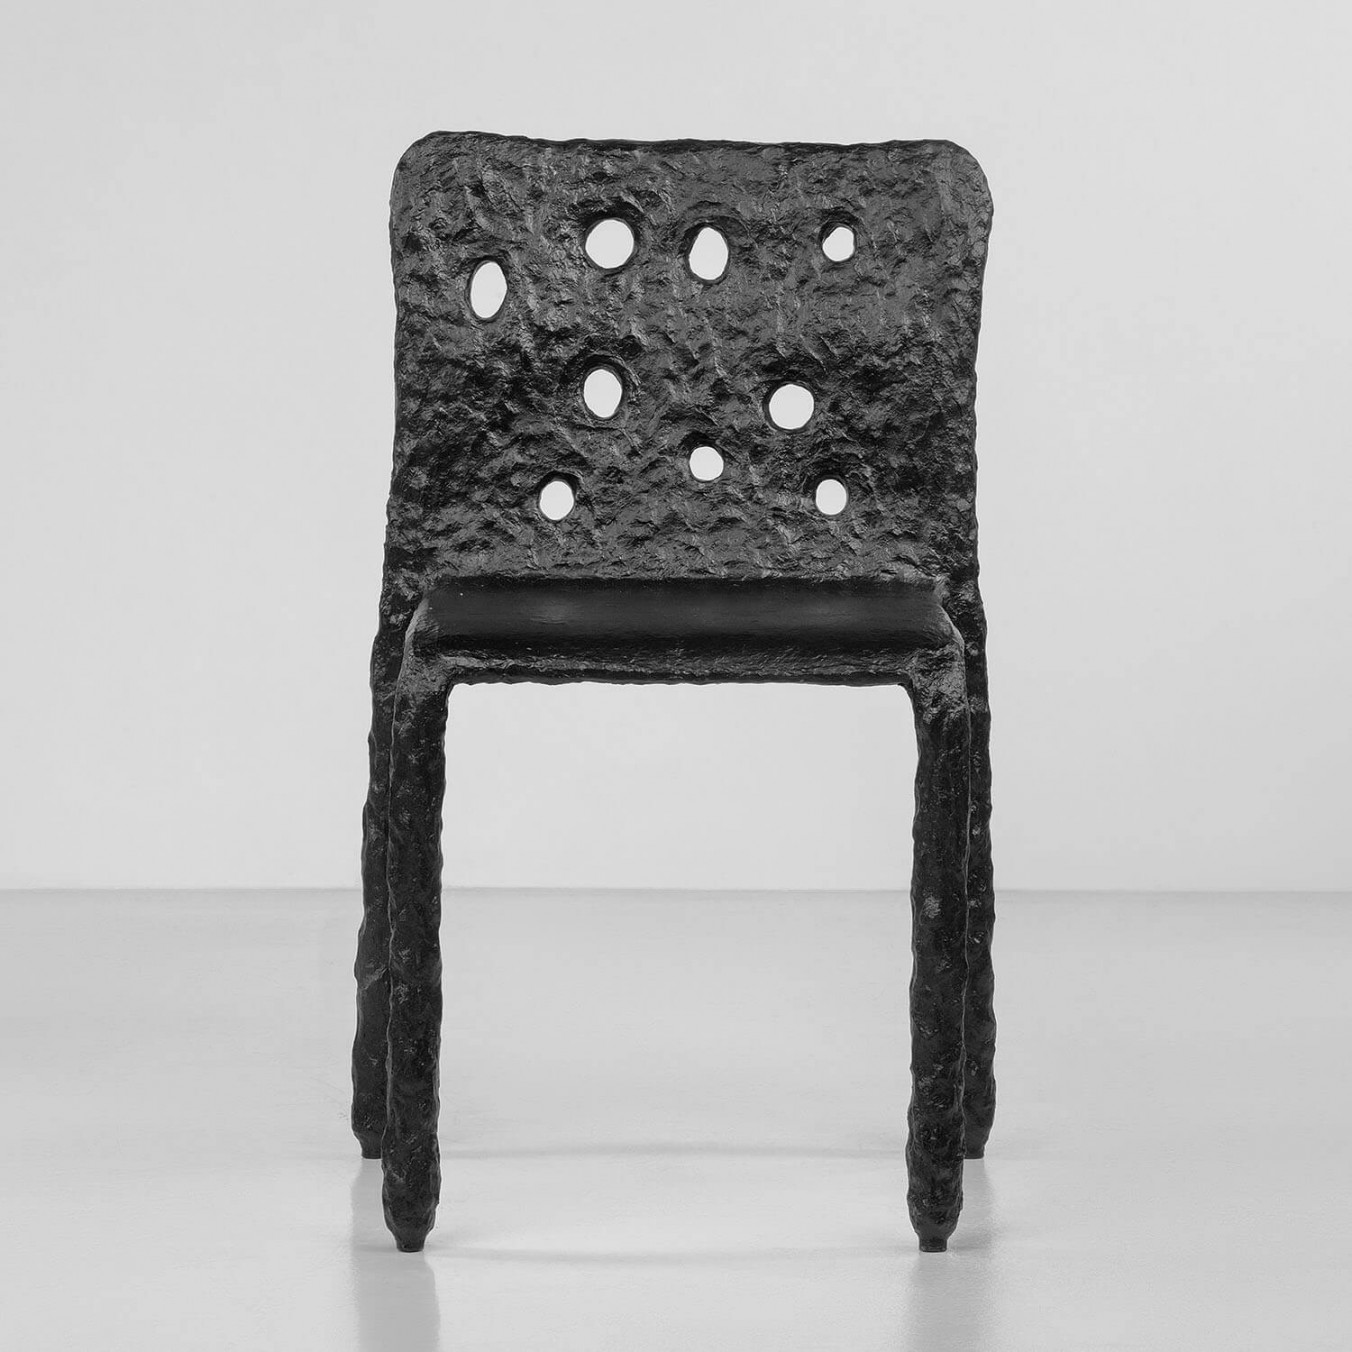 ZTISTA chair